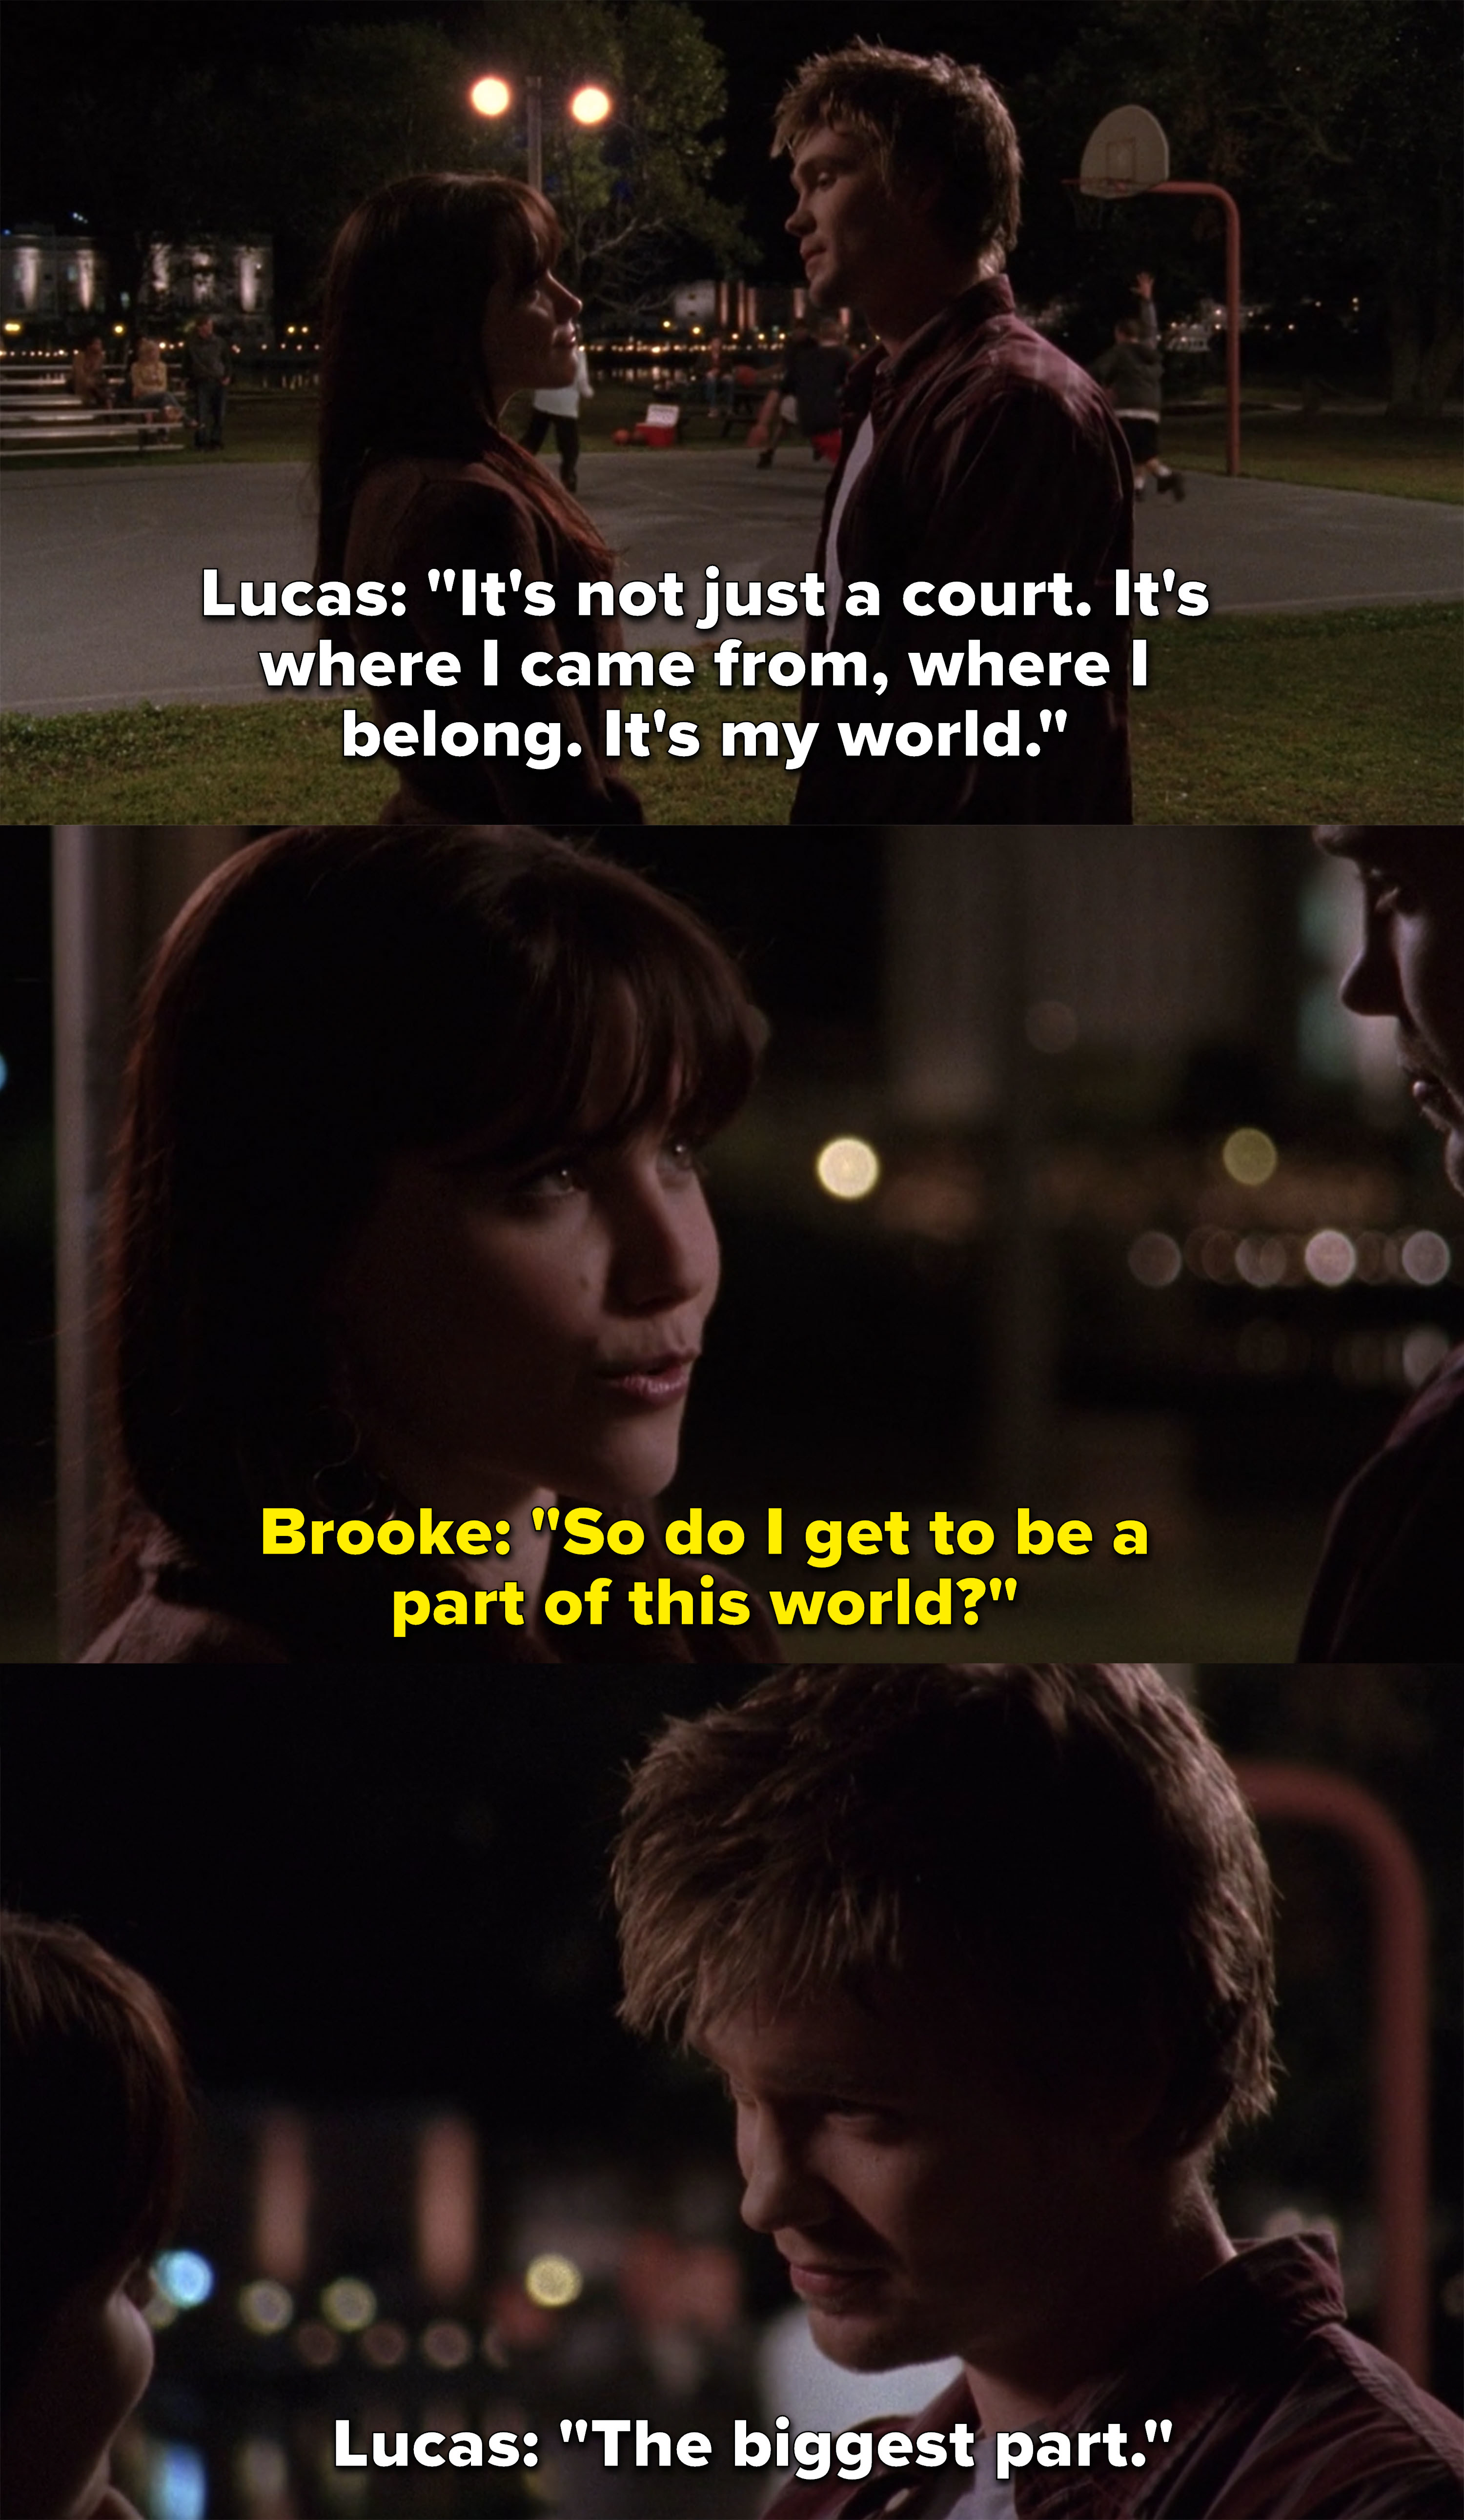 卢卡斯说,法院是他的世界,布鲁克问她是否可以成为这个世界的一部分,卢卡斯回答说:“最大的part"